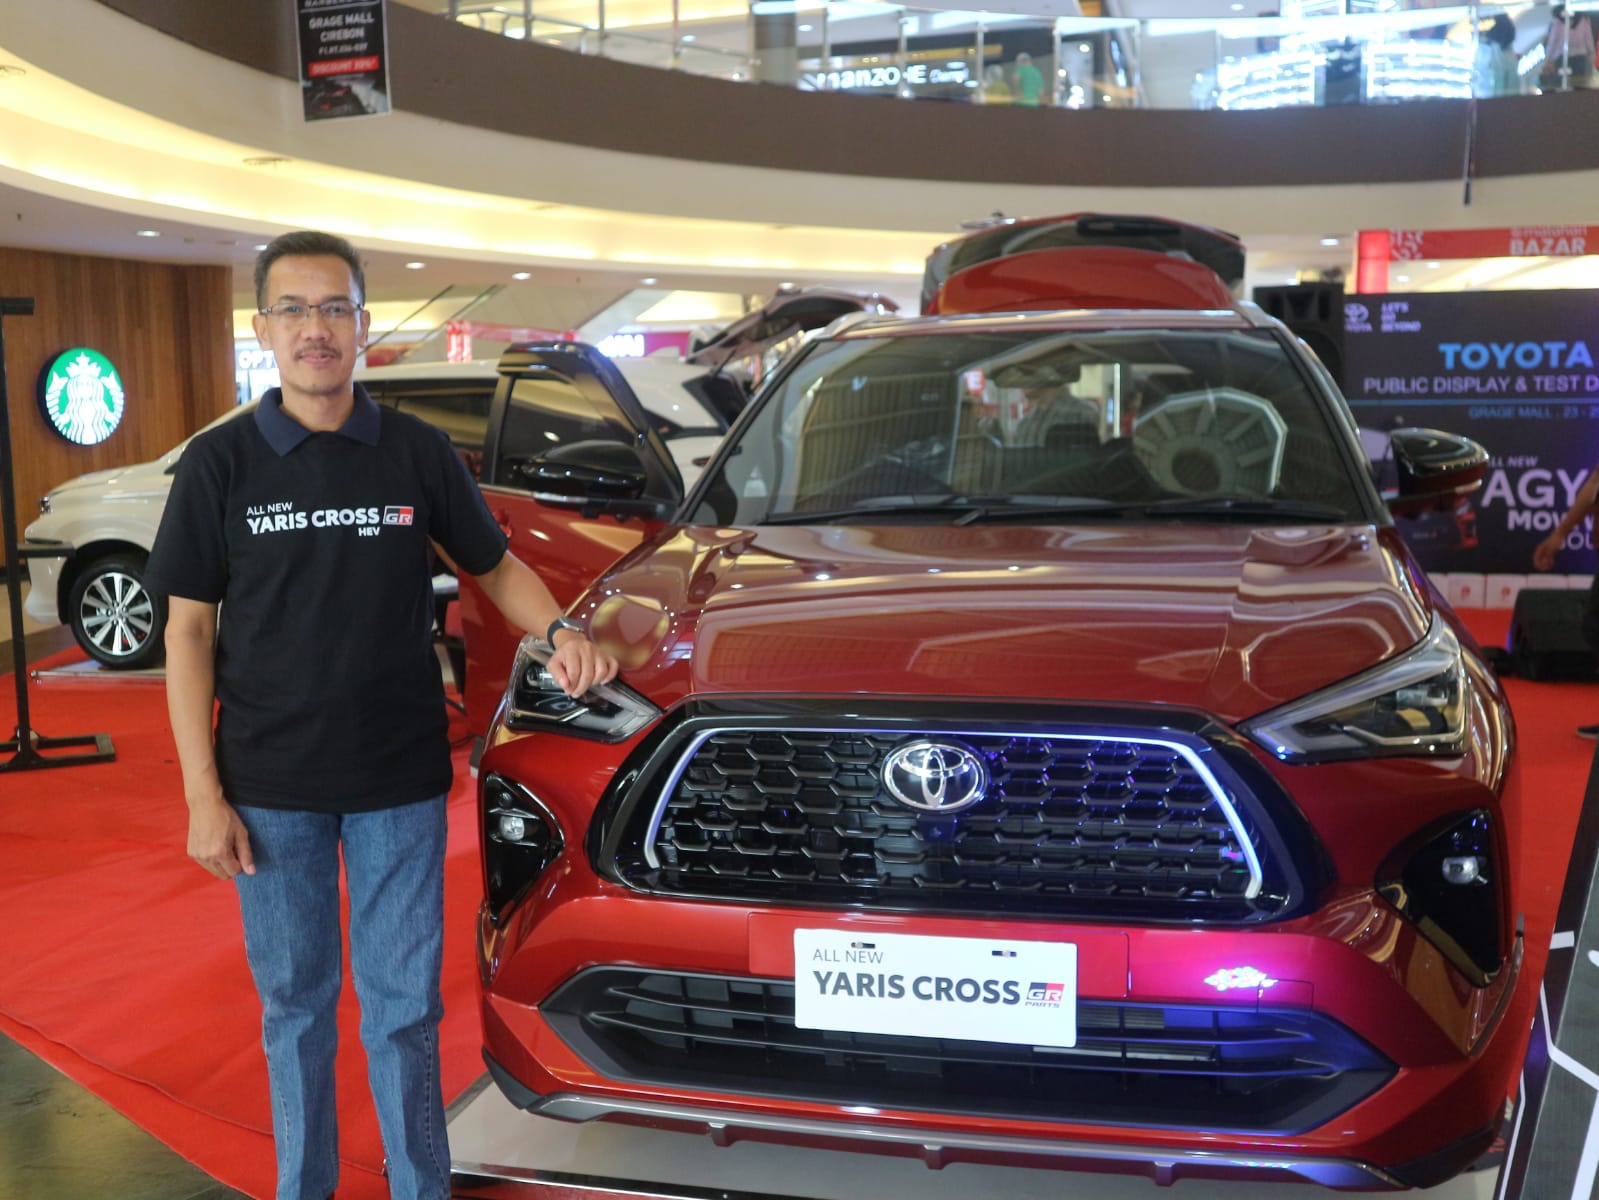 All New Yaris Cross Resmi Dipasarkan di Cirebon Setelah Diperkenalkan di Toyota Expo, Cek Spesifikasinya